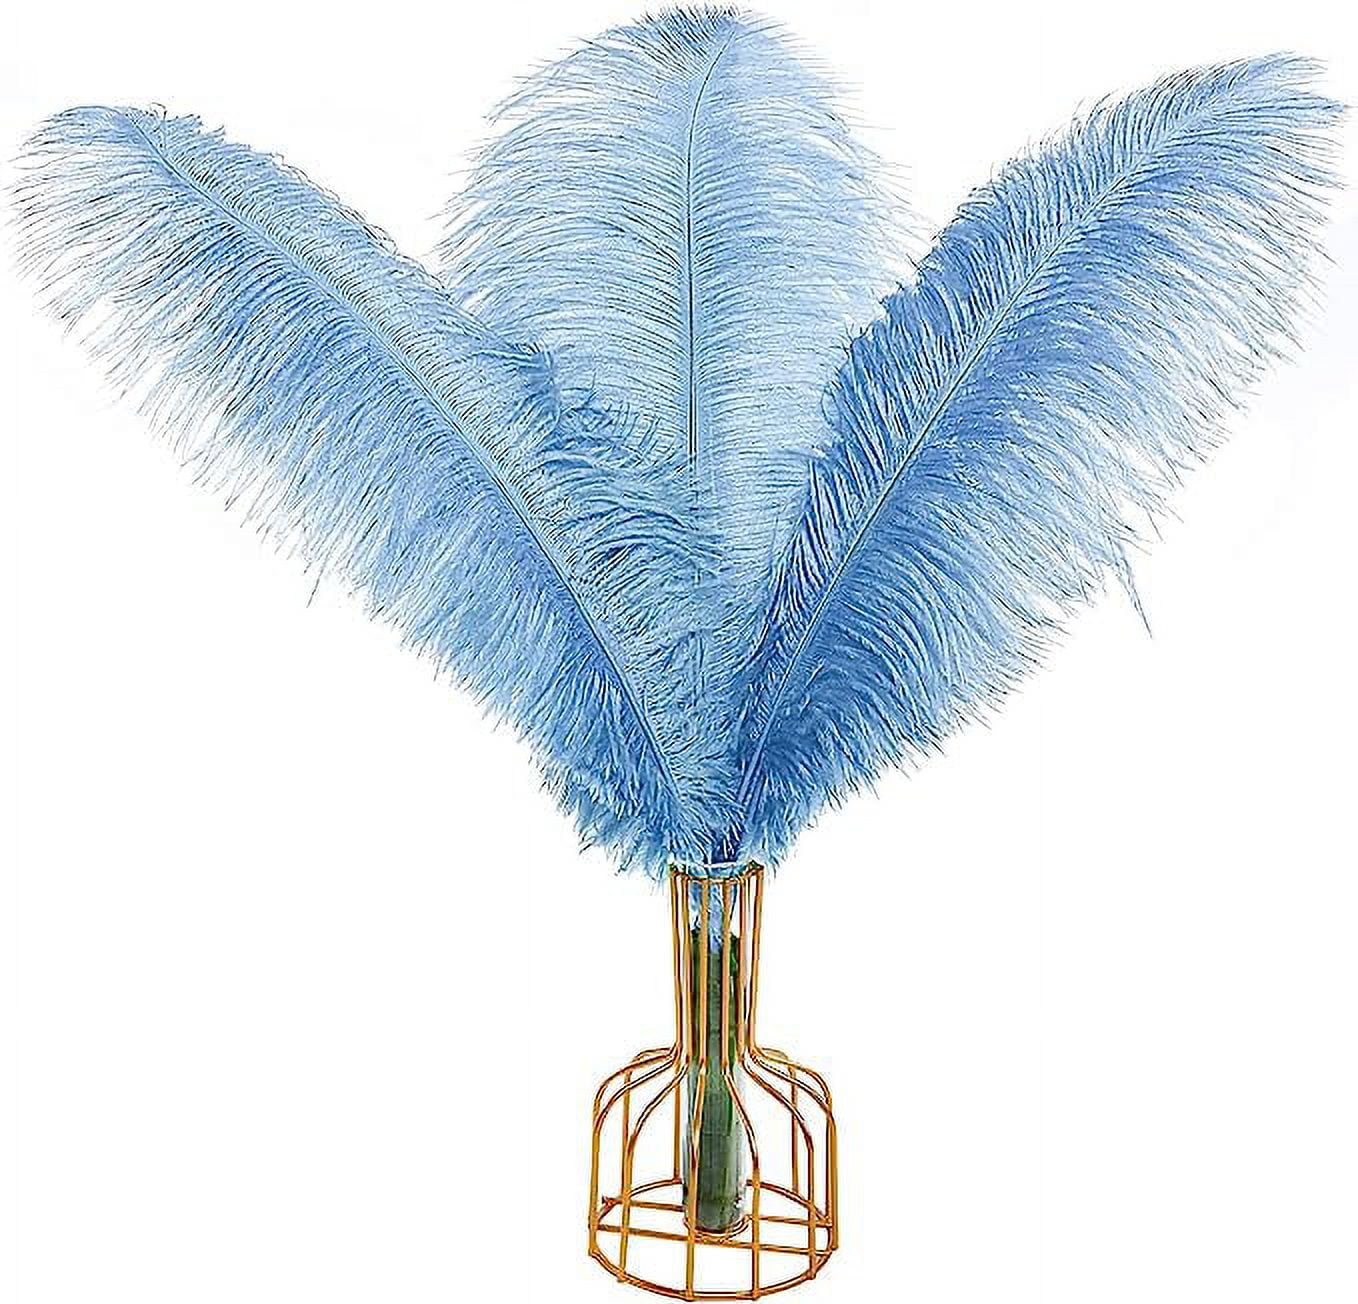 Ostrich Feather Fringe (182 cm ) 2 yard trim 5-6 (13cm-15cm) in turquoise  - Ostrich Fringe - Ostrich Feather Fringe - Feathers craft